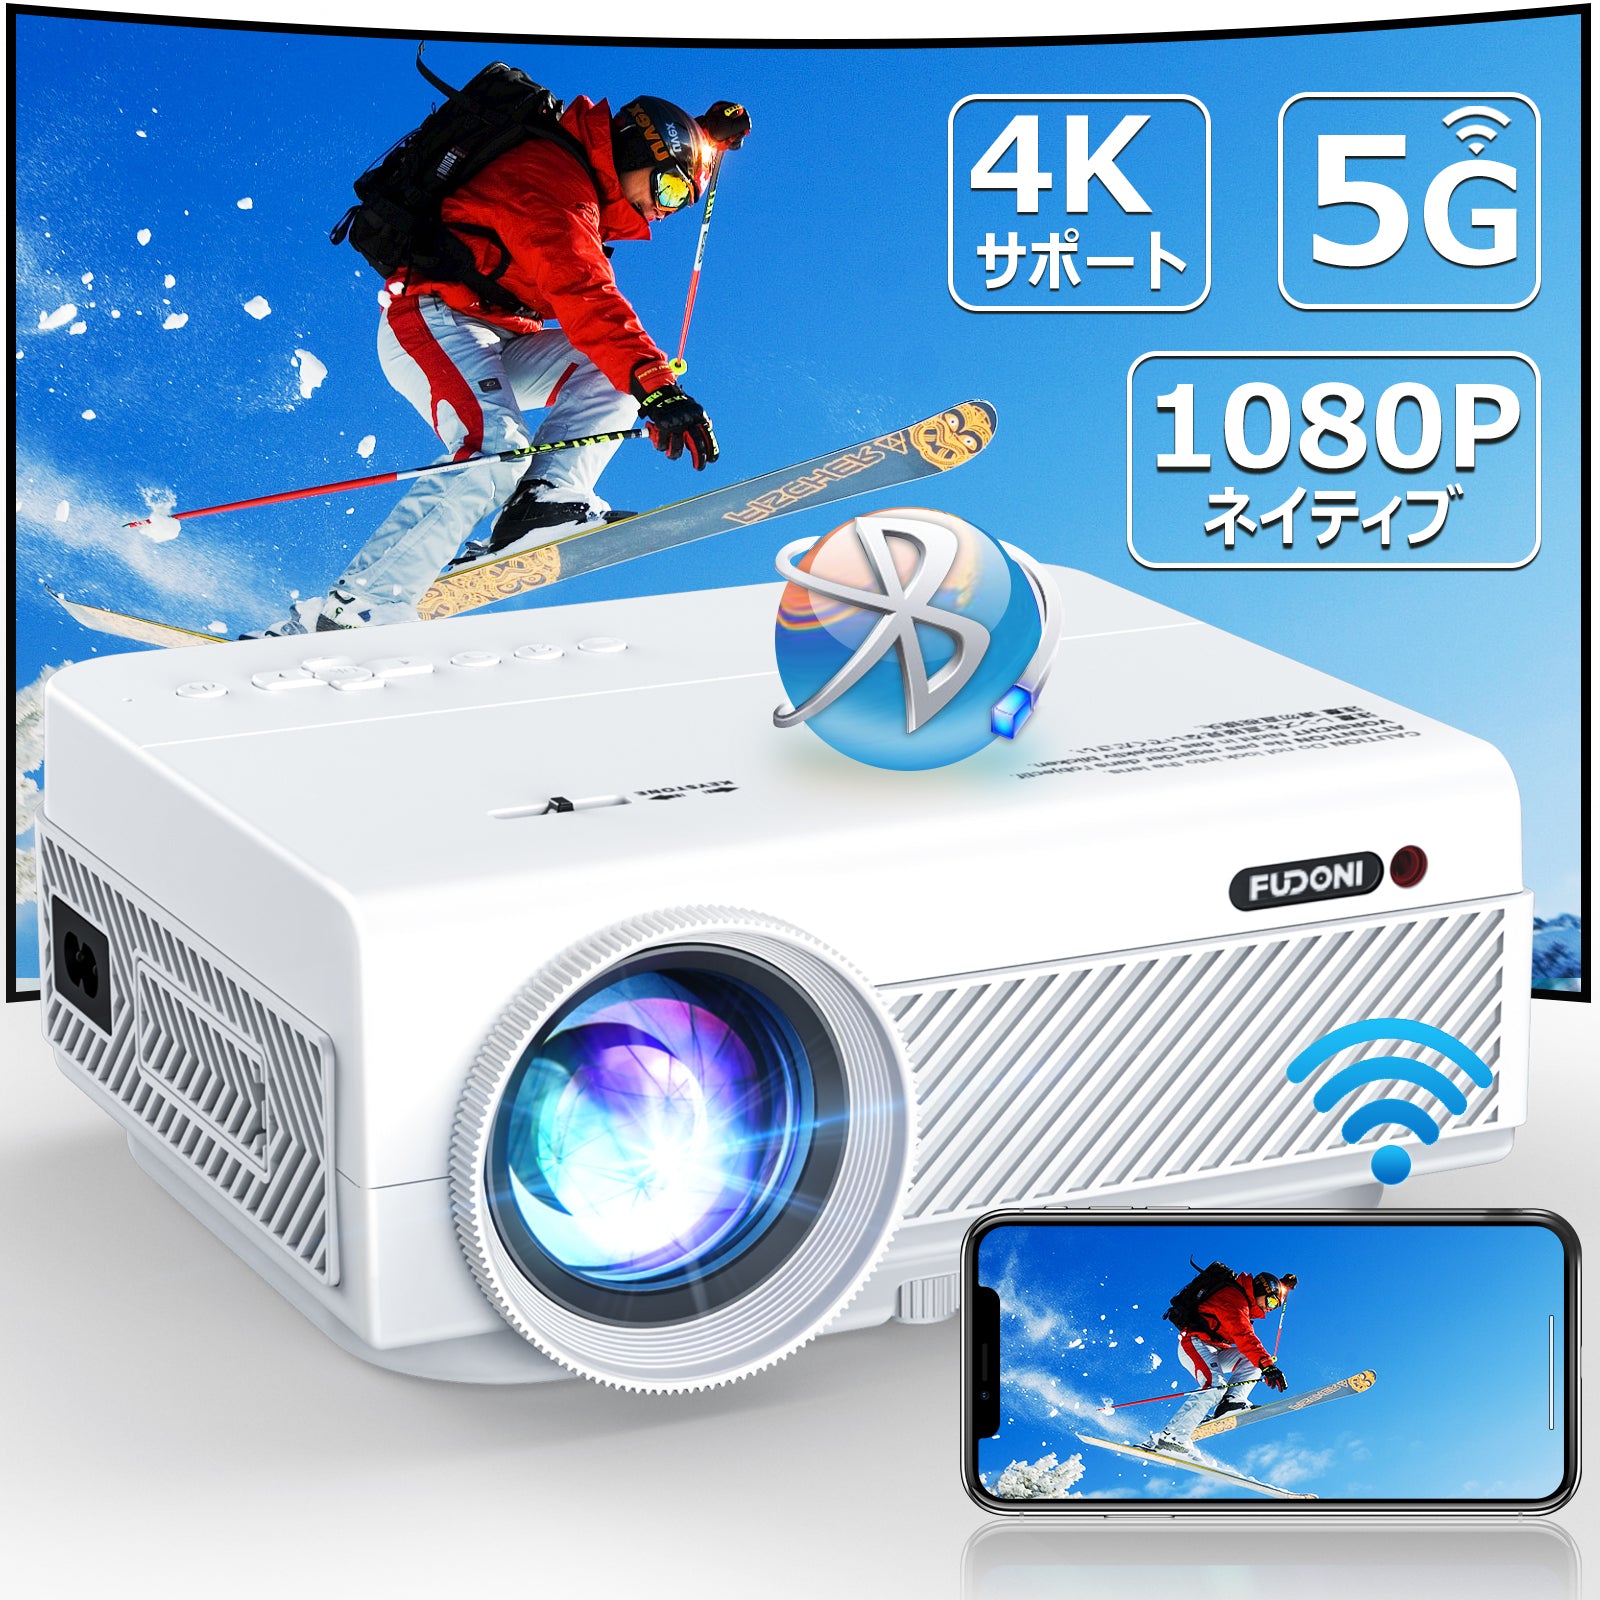 プロジェクター 超小型 家庭用 9500LMフルHD 1080P 4K対応【技術革新版 